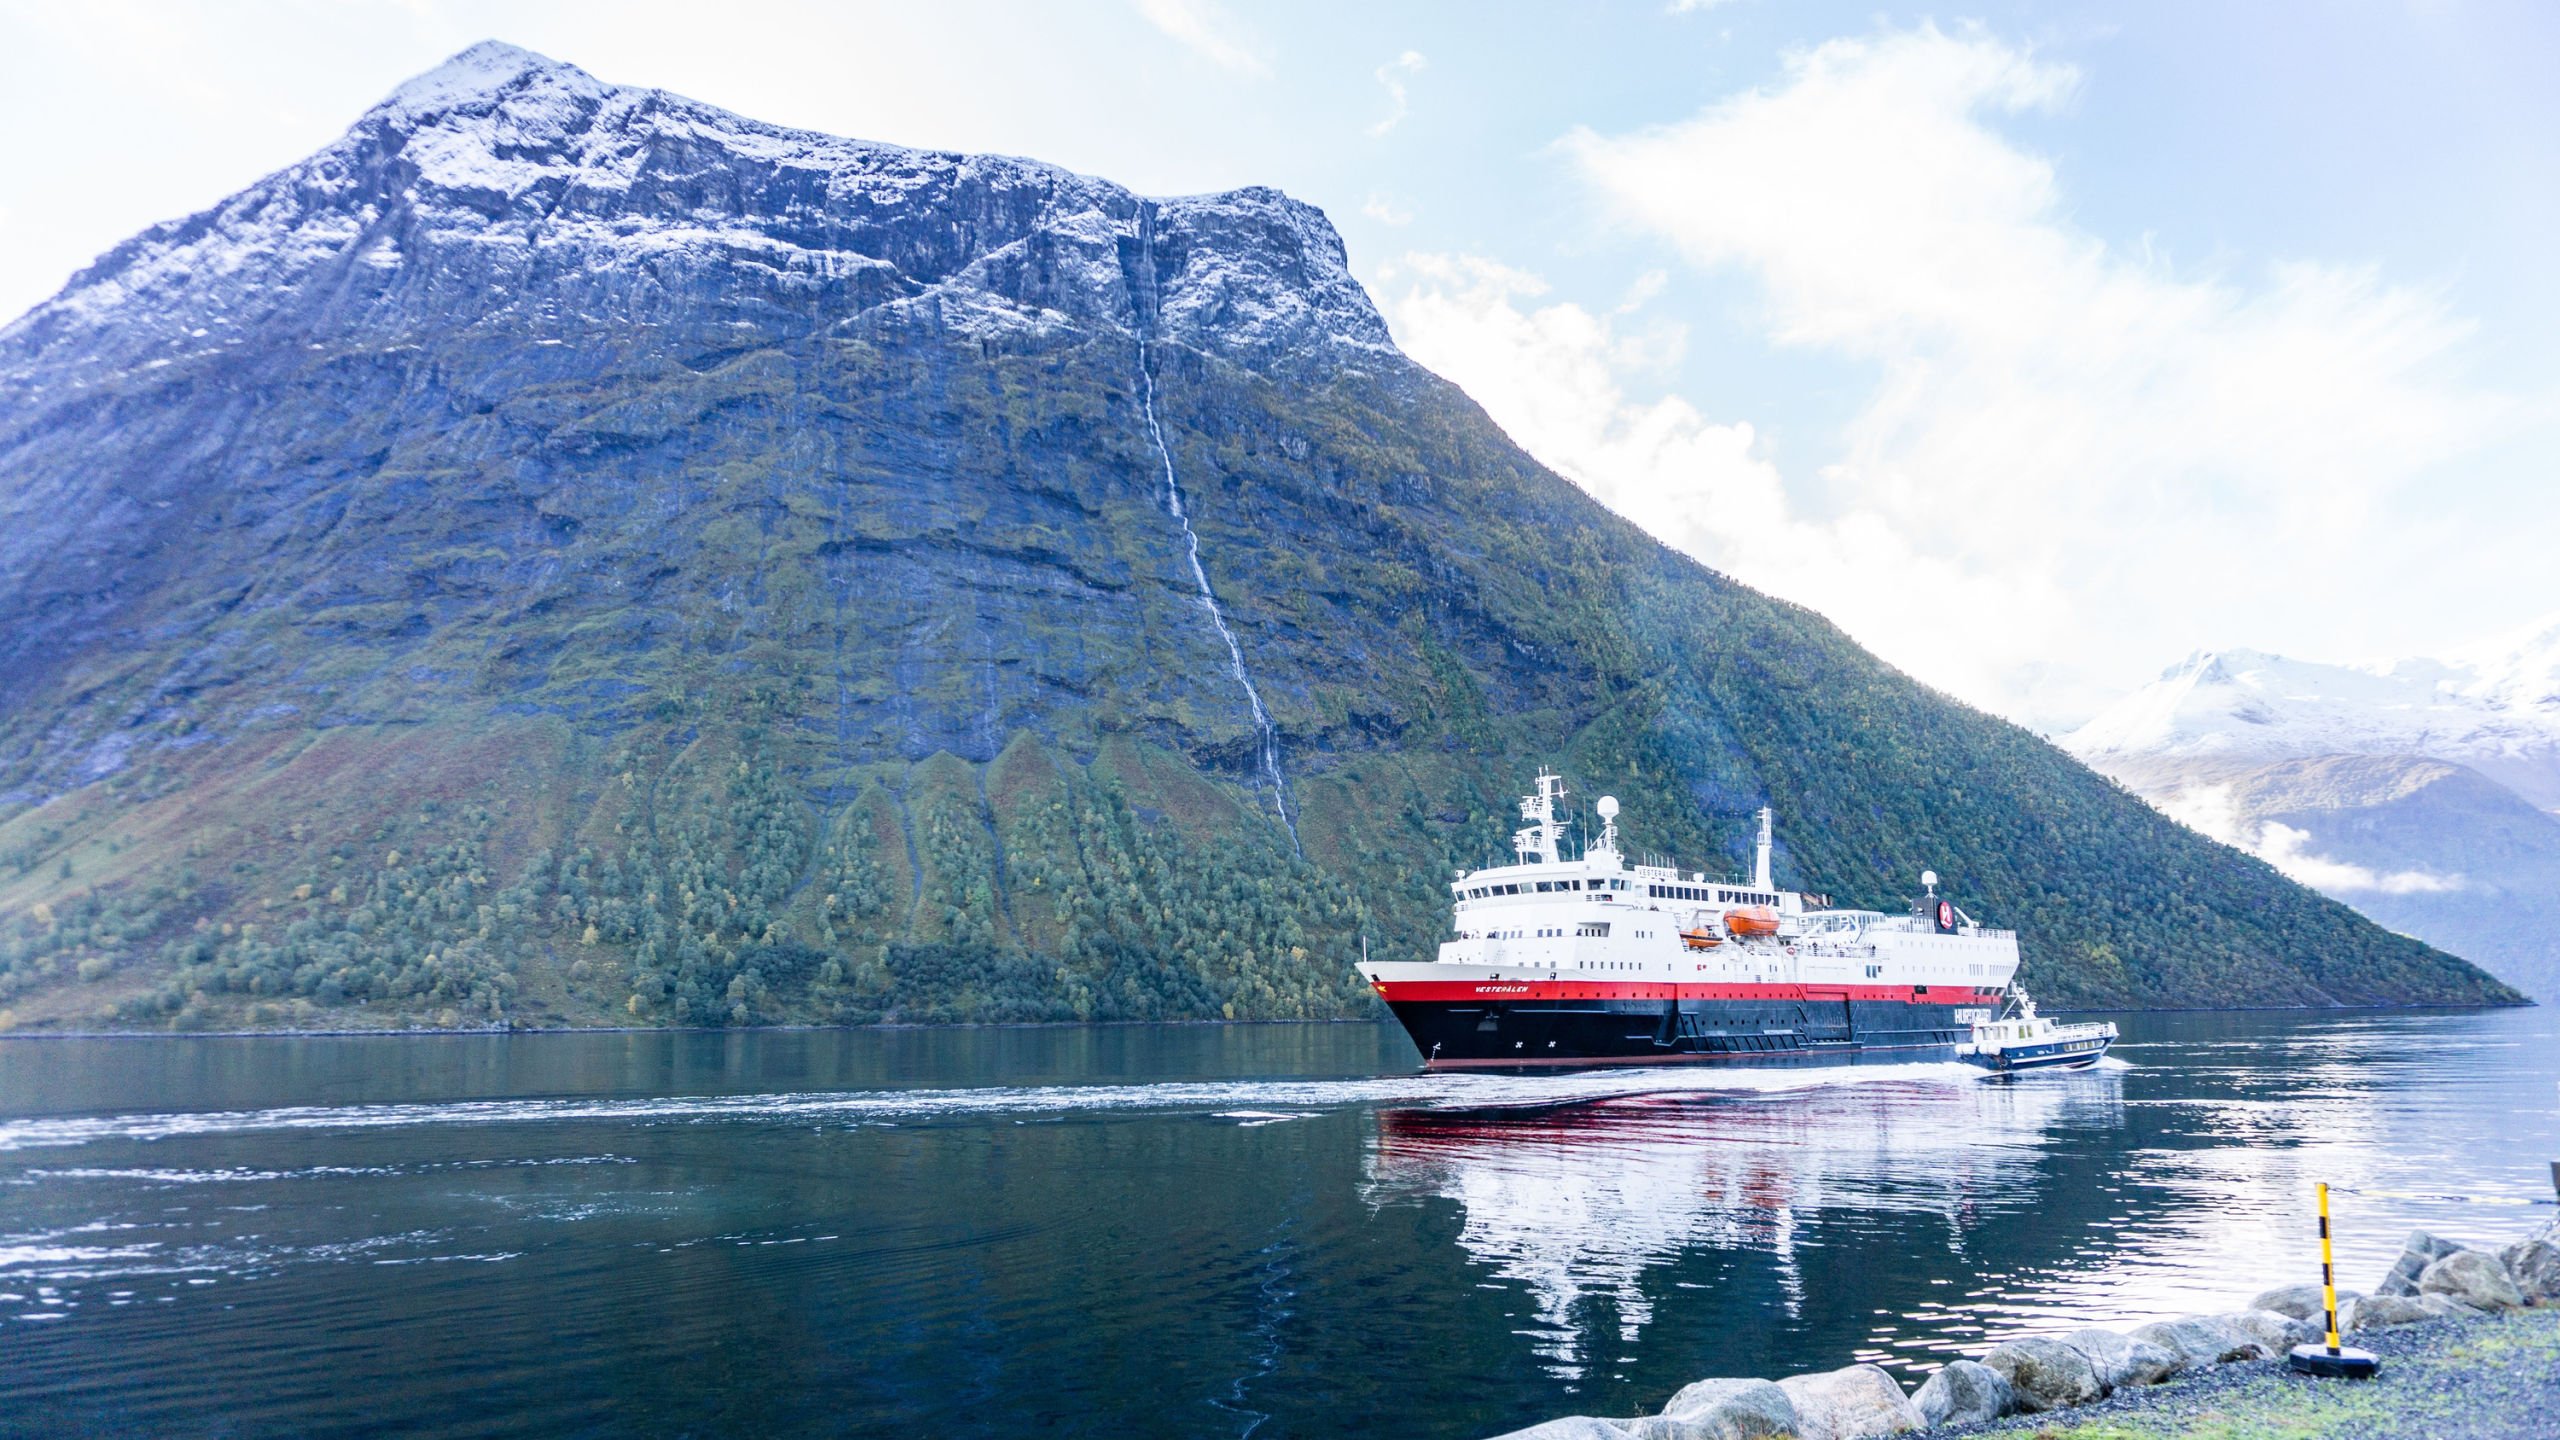 Landscape on the Norway coastal cruise